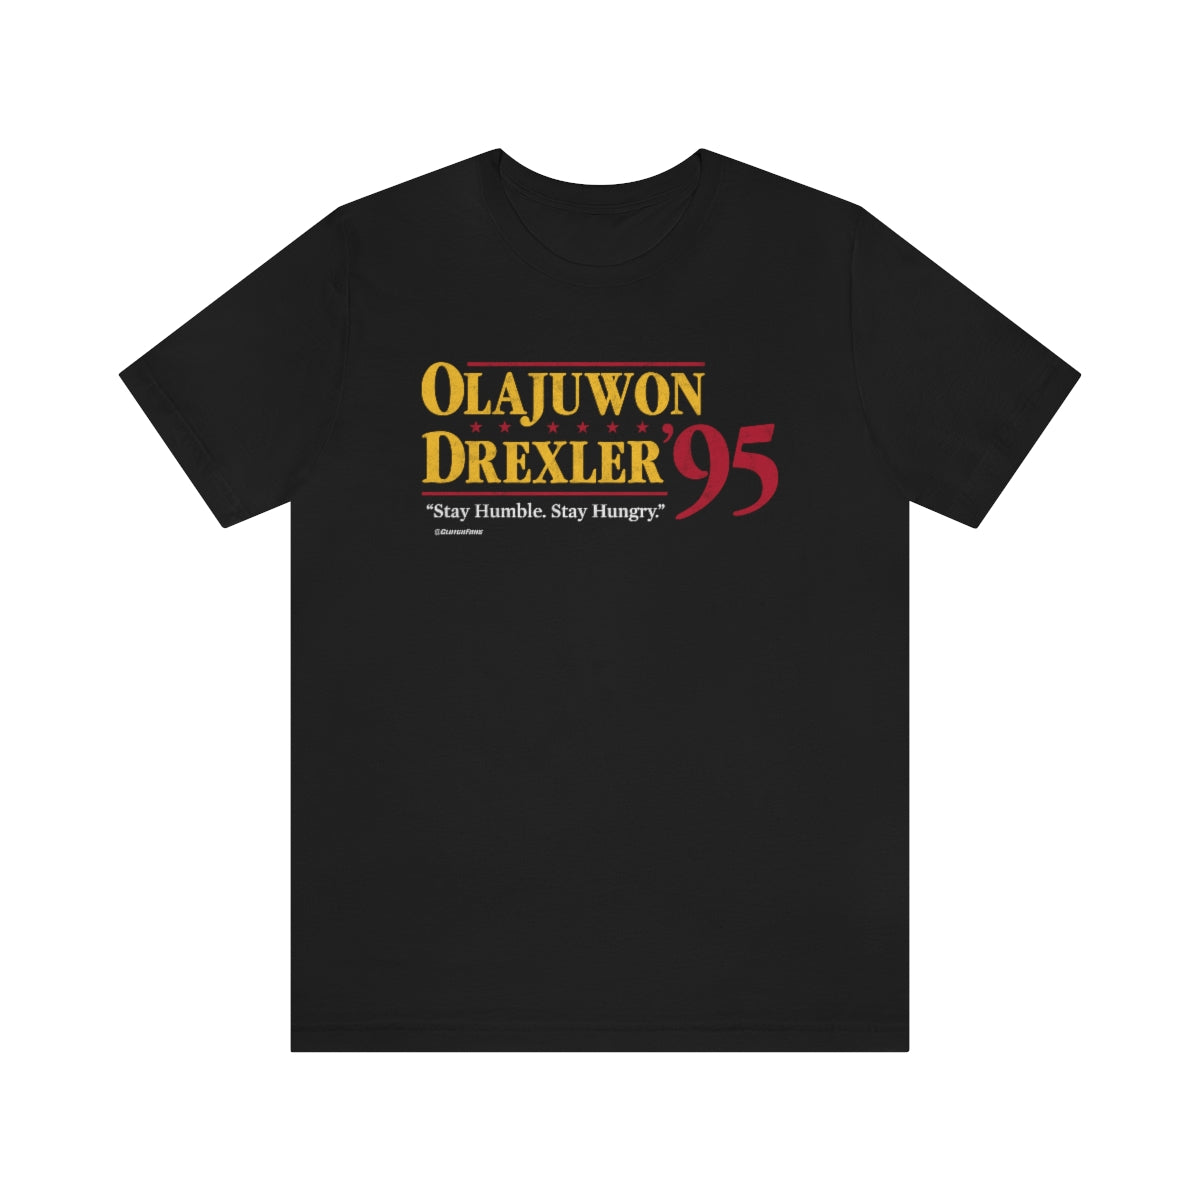 Olajuwon Drexler '95